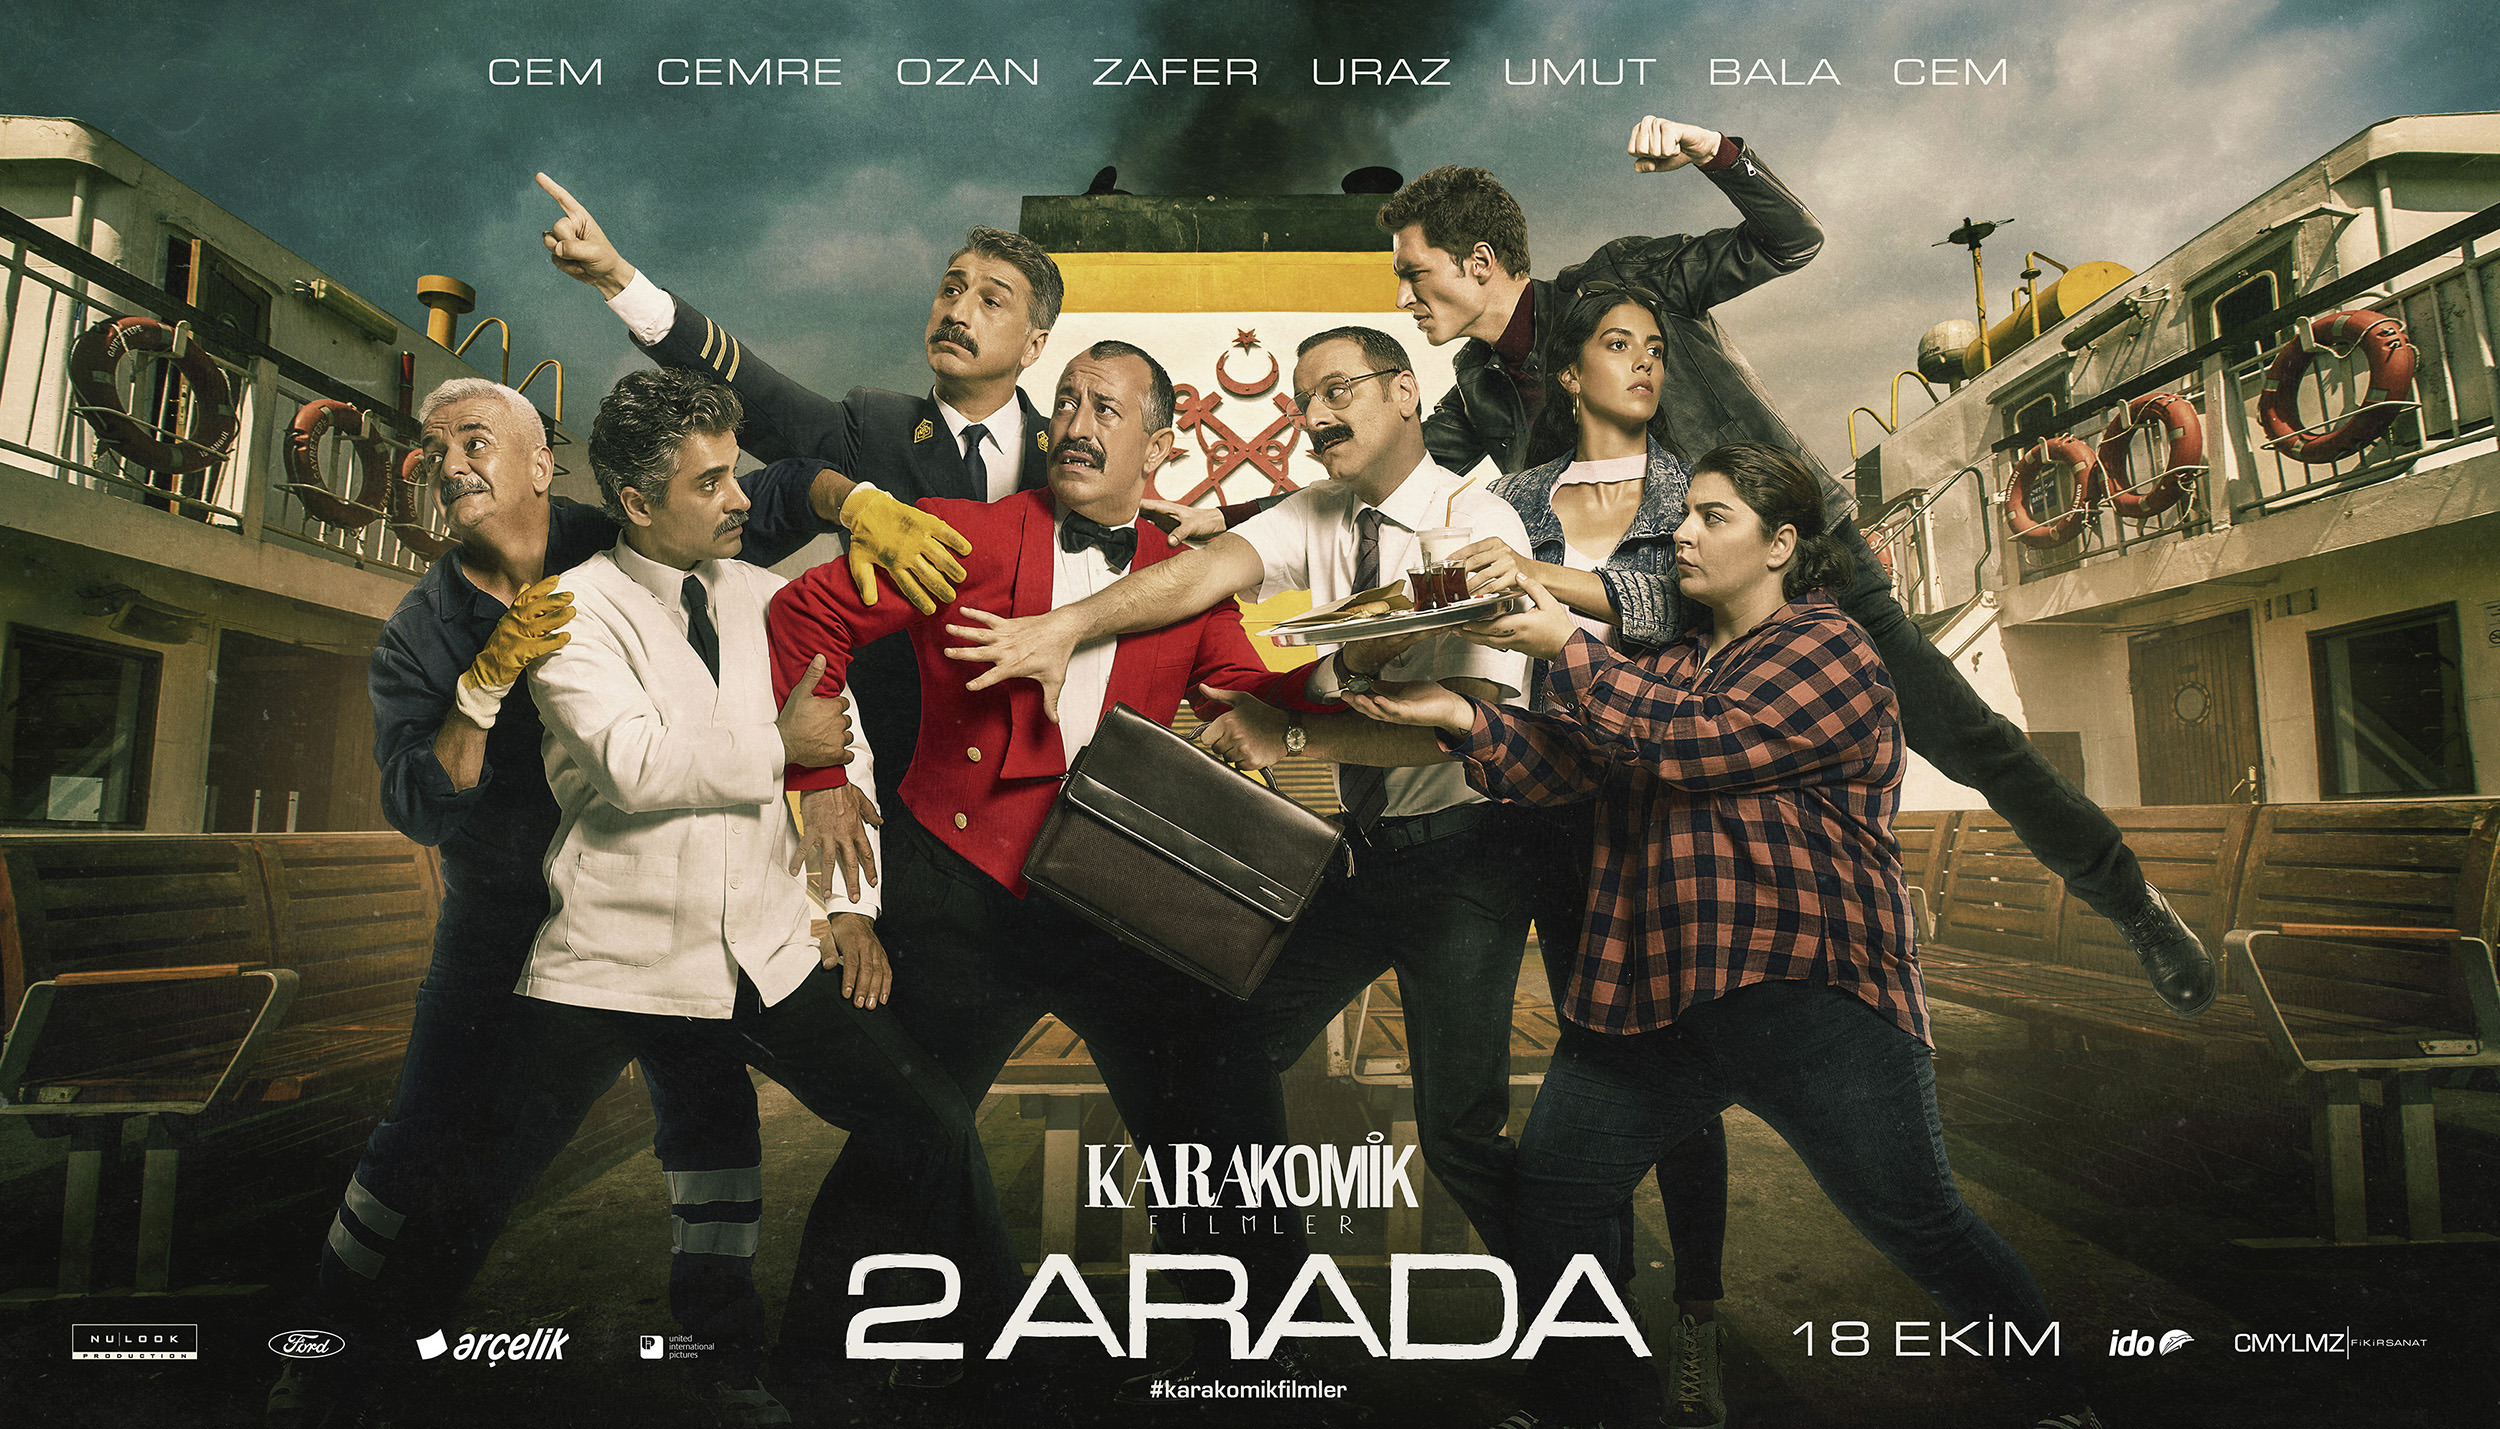 Mega Sized Movie Poster Image for Karakomik Filmler (#5 of 9)